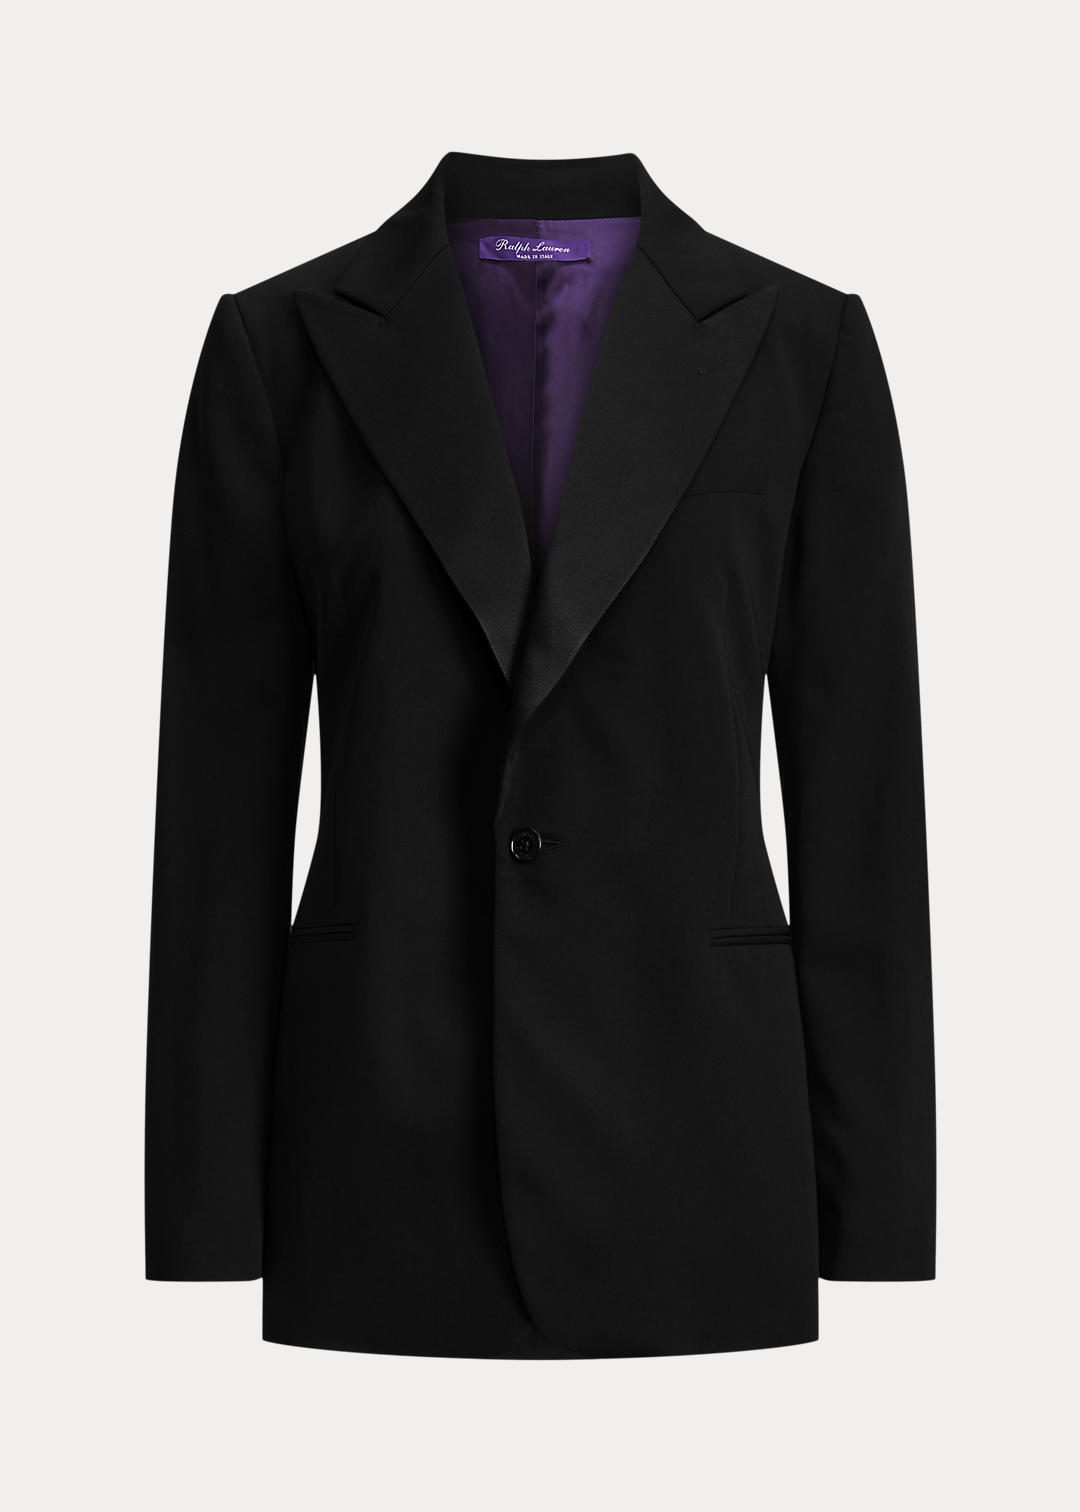 Ralph Lauren Collection Truett Wool Gabardine Tuxedo Jacket 2